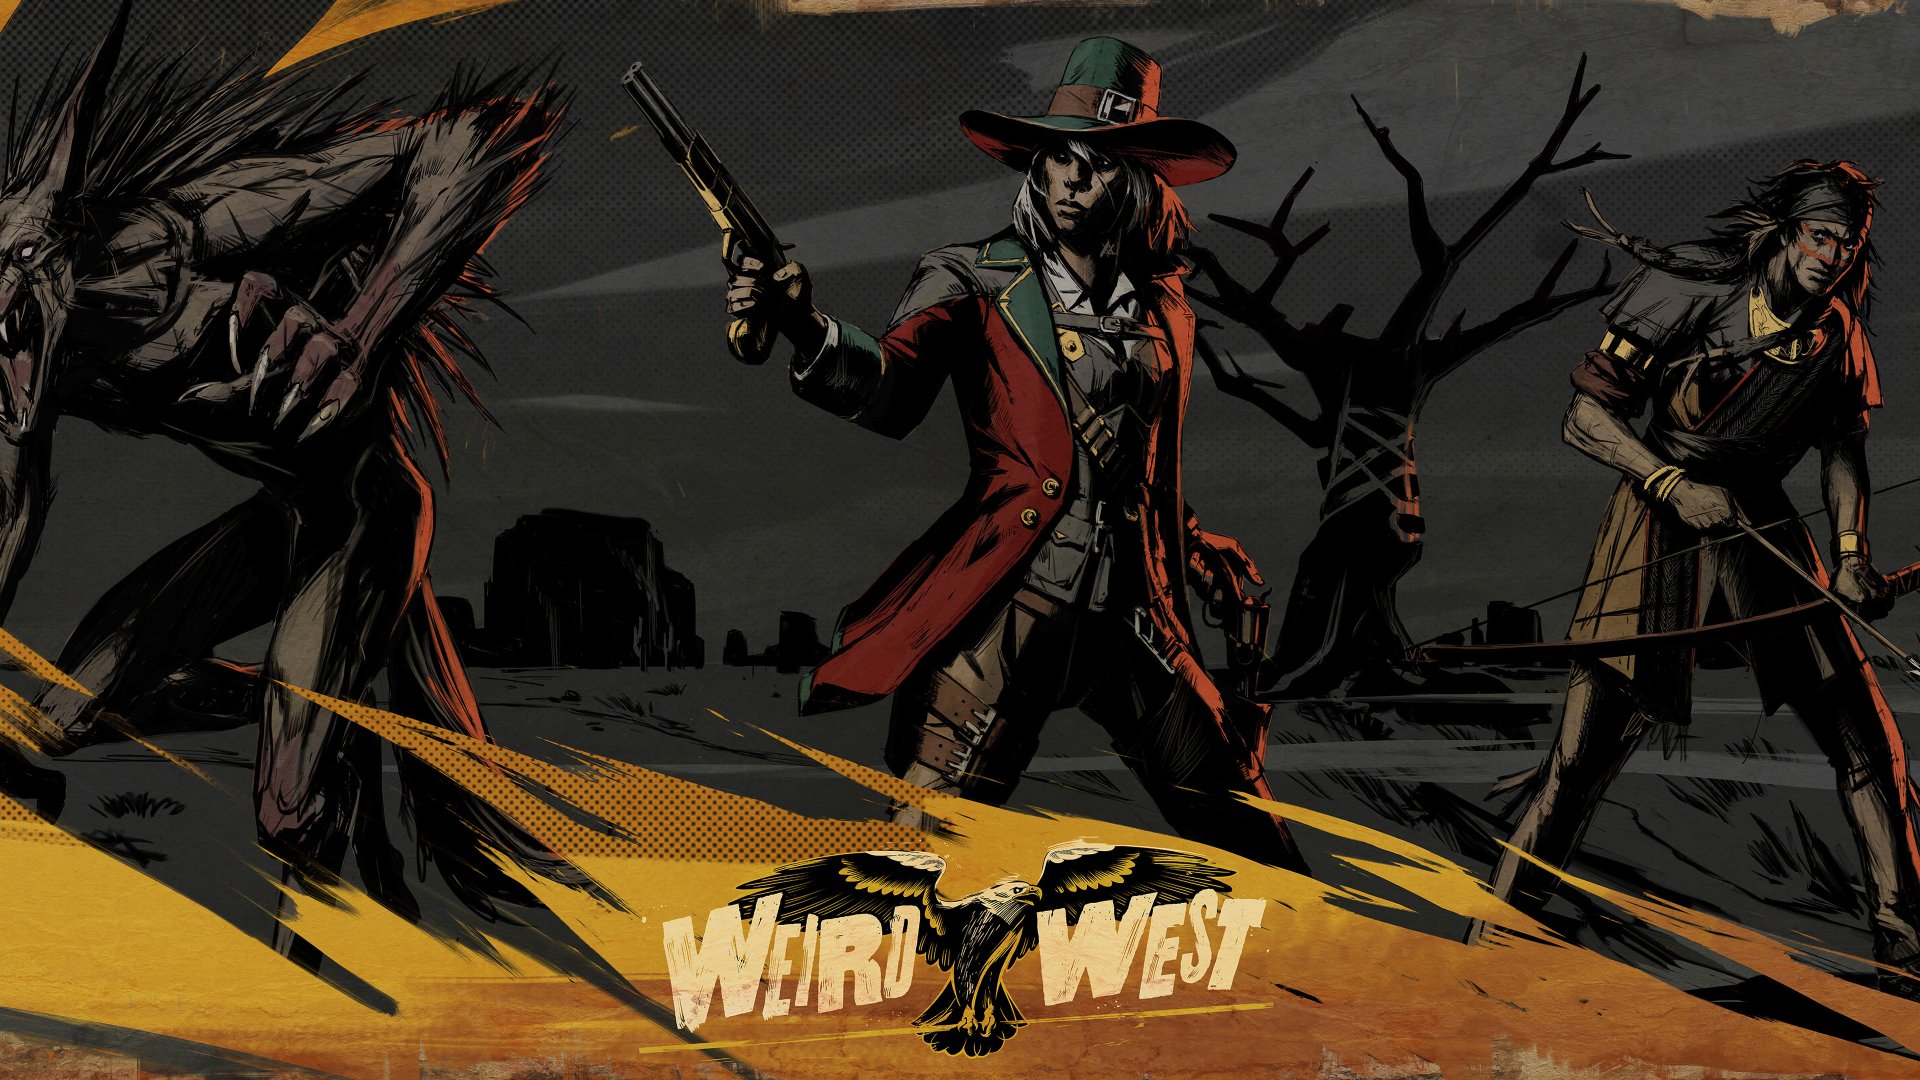 Weird west 6